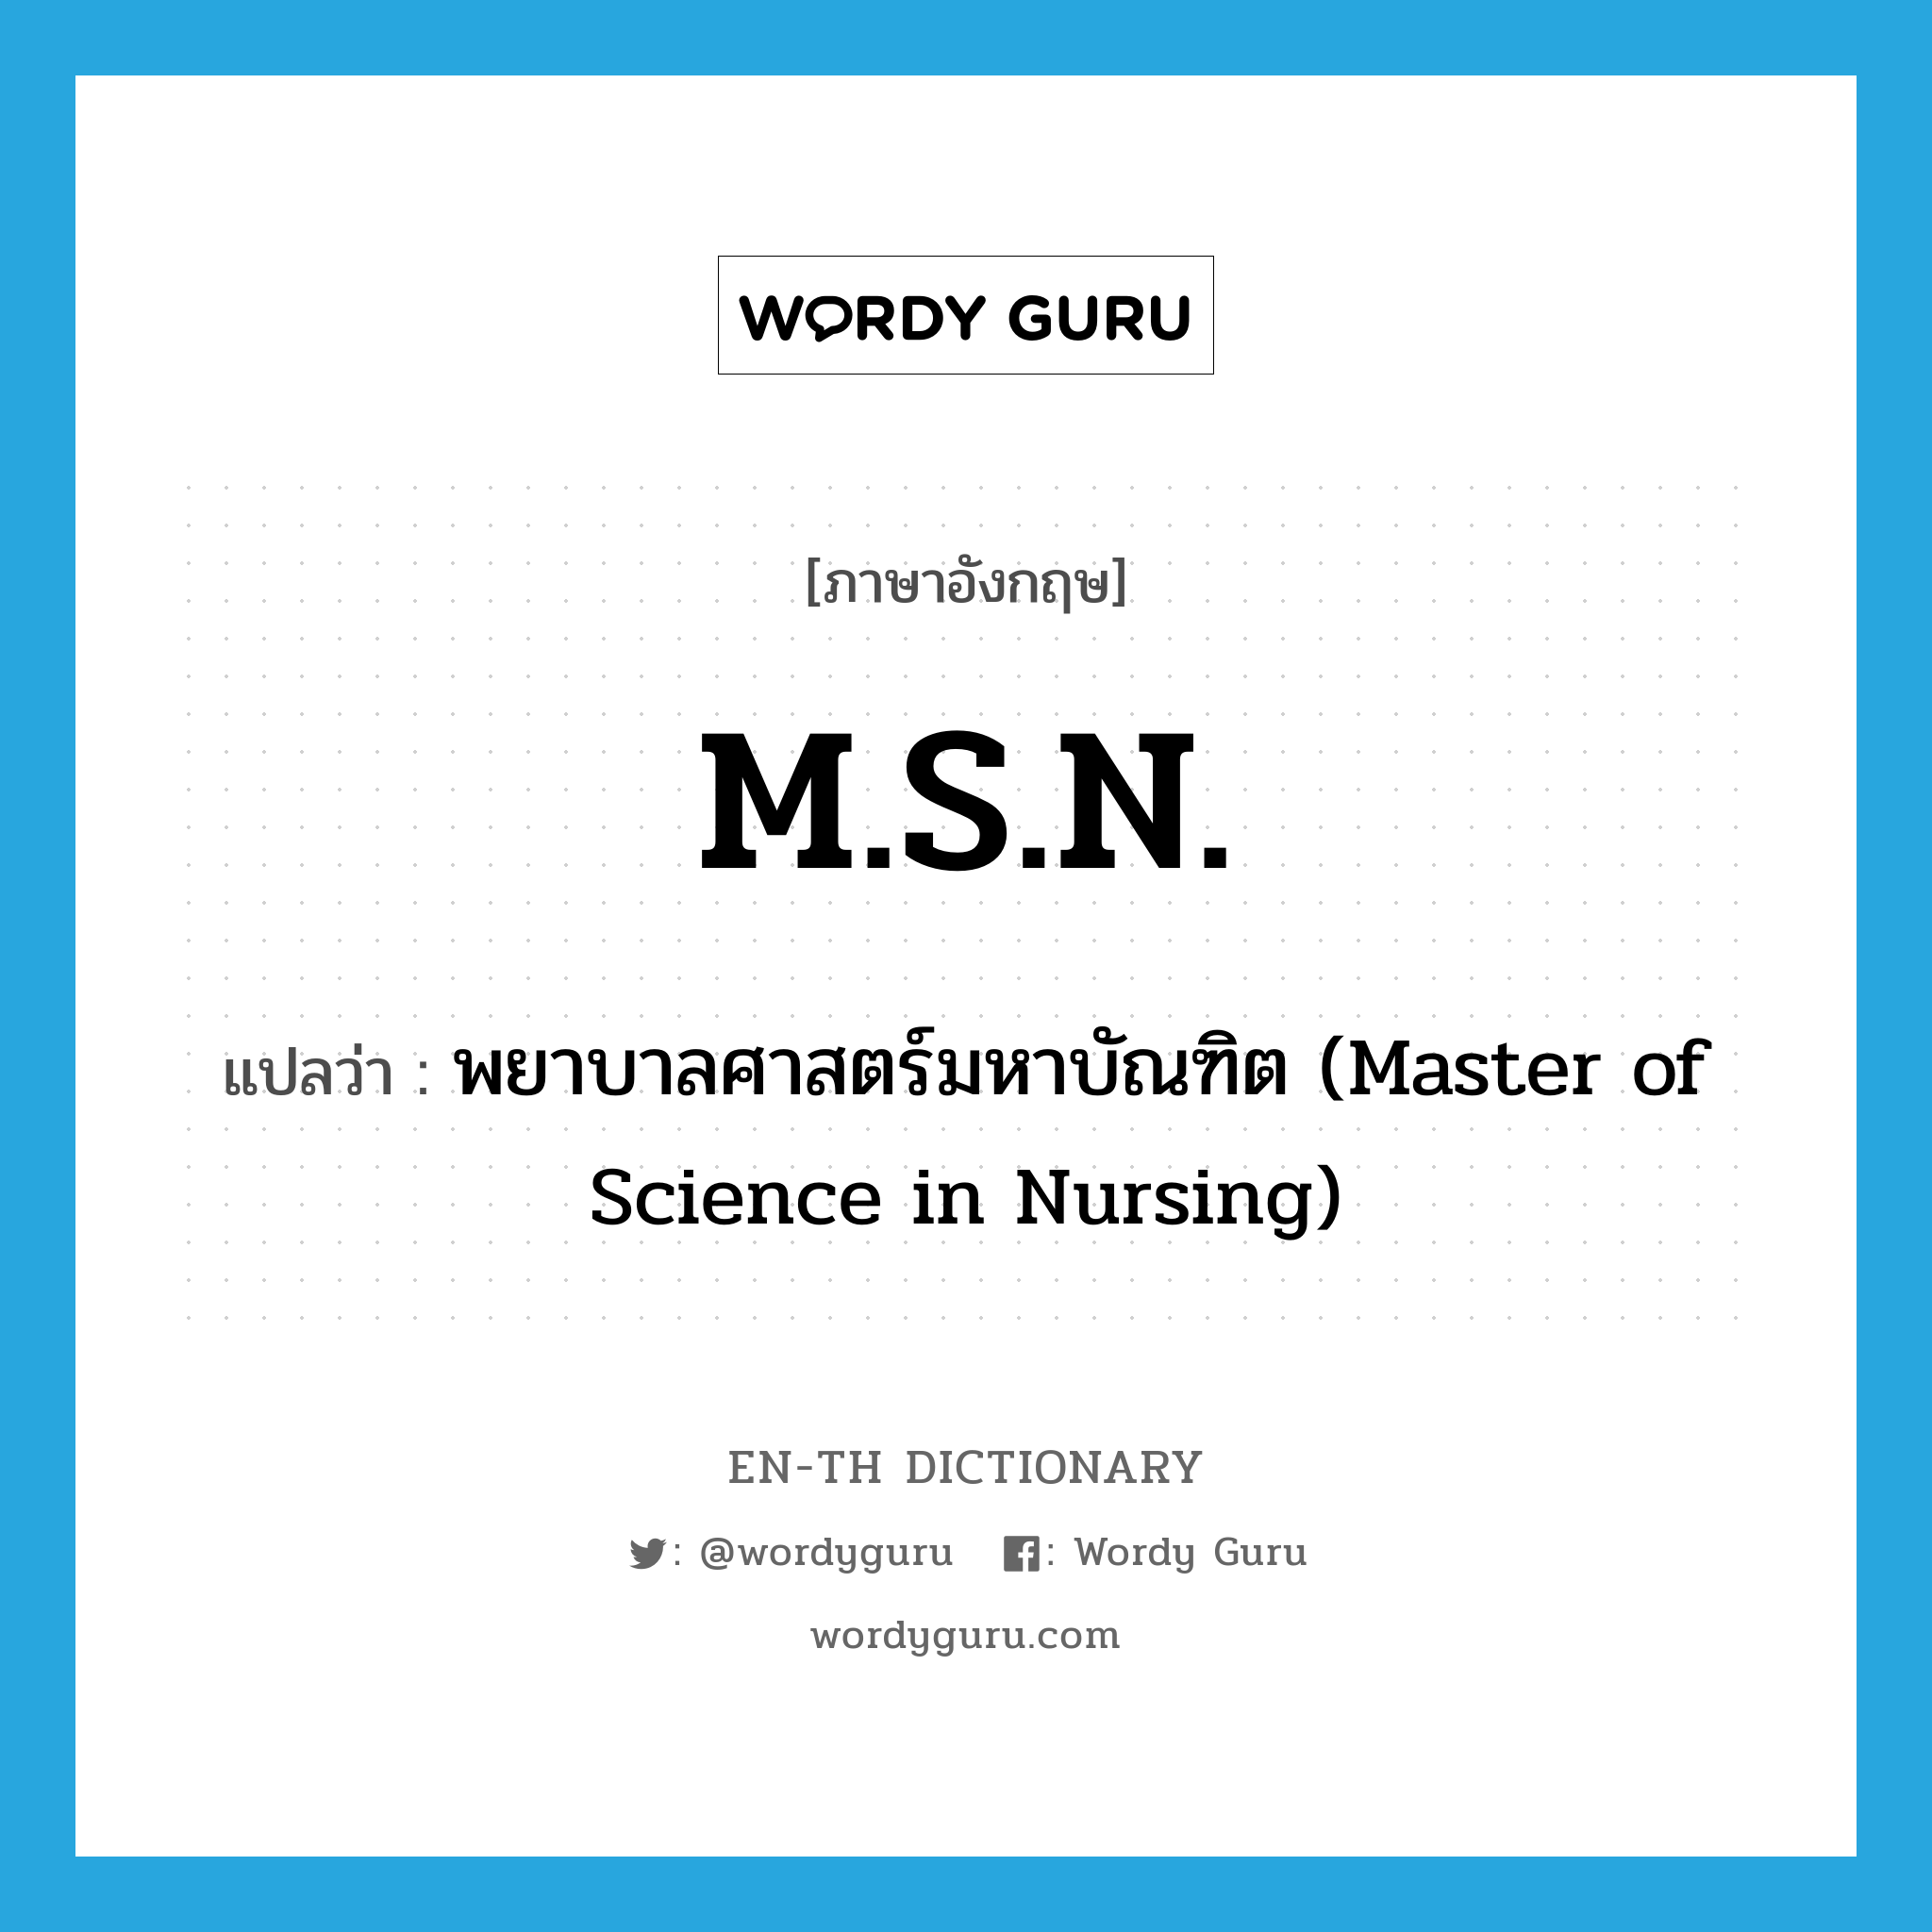 พยาบาลศาสตร์มหาบัณฑิต (Master of Science in Nursing) ภาษาอังกฤษ?, คำศัพท์ภาษาอังกฤษ พยาบาลศาสตร์มหาบัณฑิต (Master of Science in Nursing) แปลว่า M.S.N. ประเภท ABBR หมวด ABBR